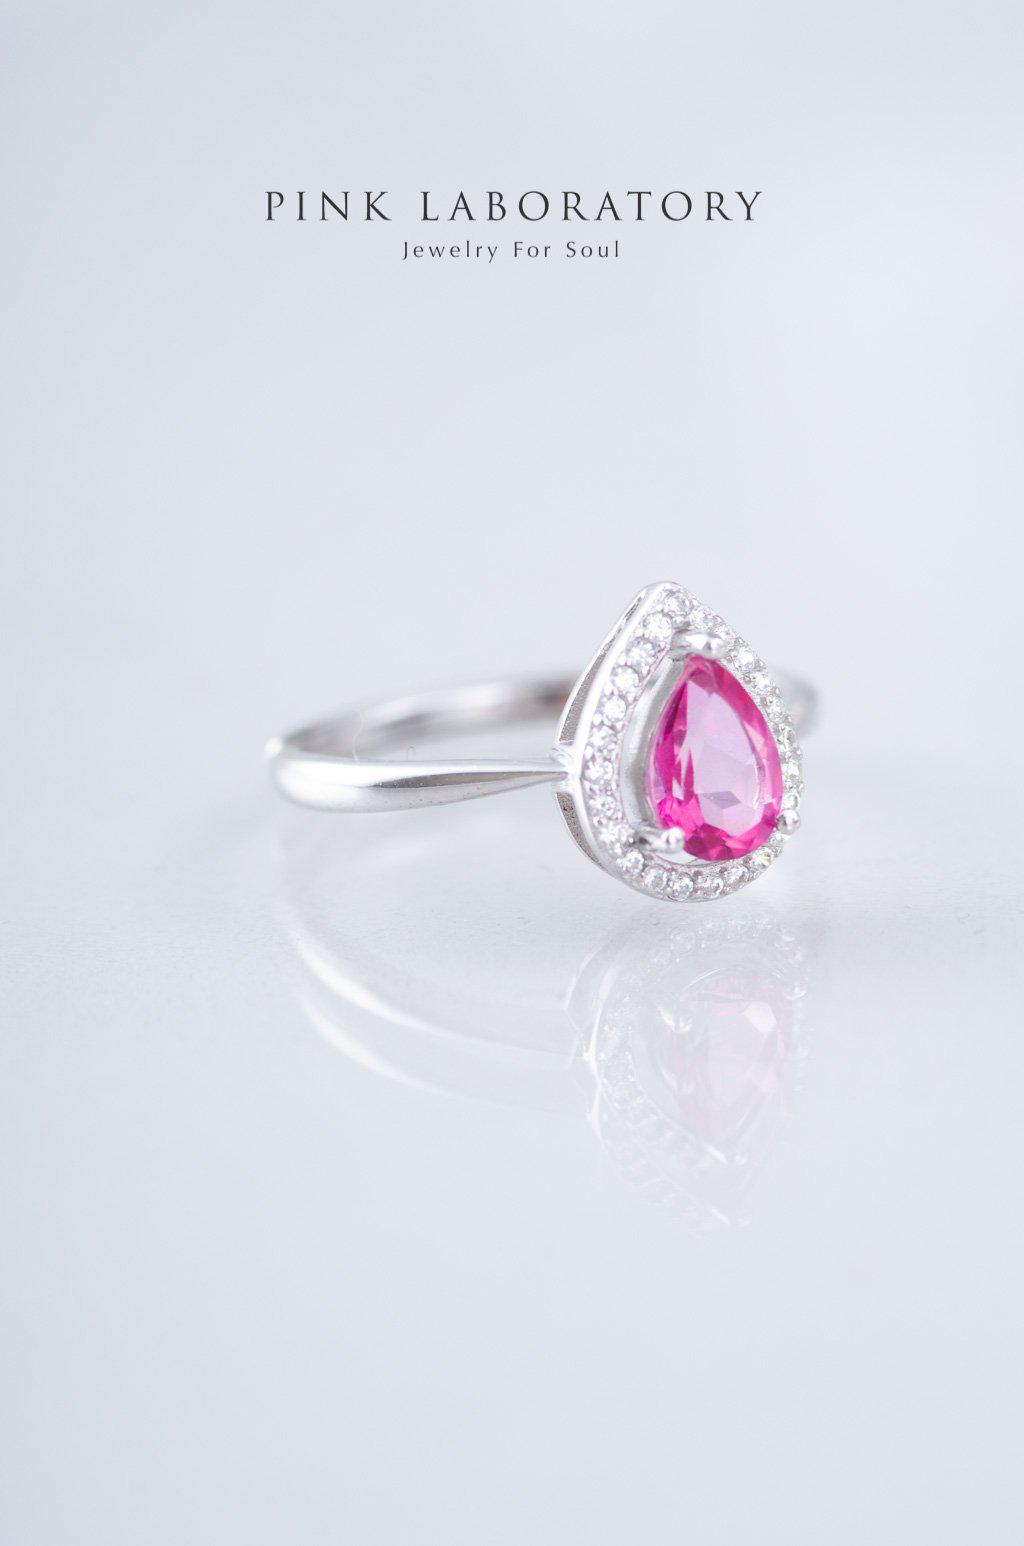 粉紅托帕石鋯石925純銀戒指 - Pink Laboratory